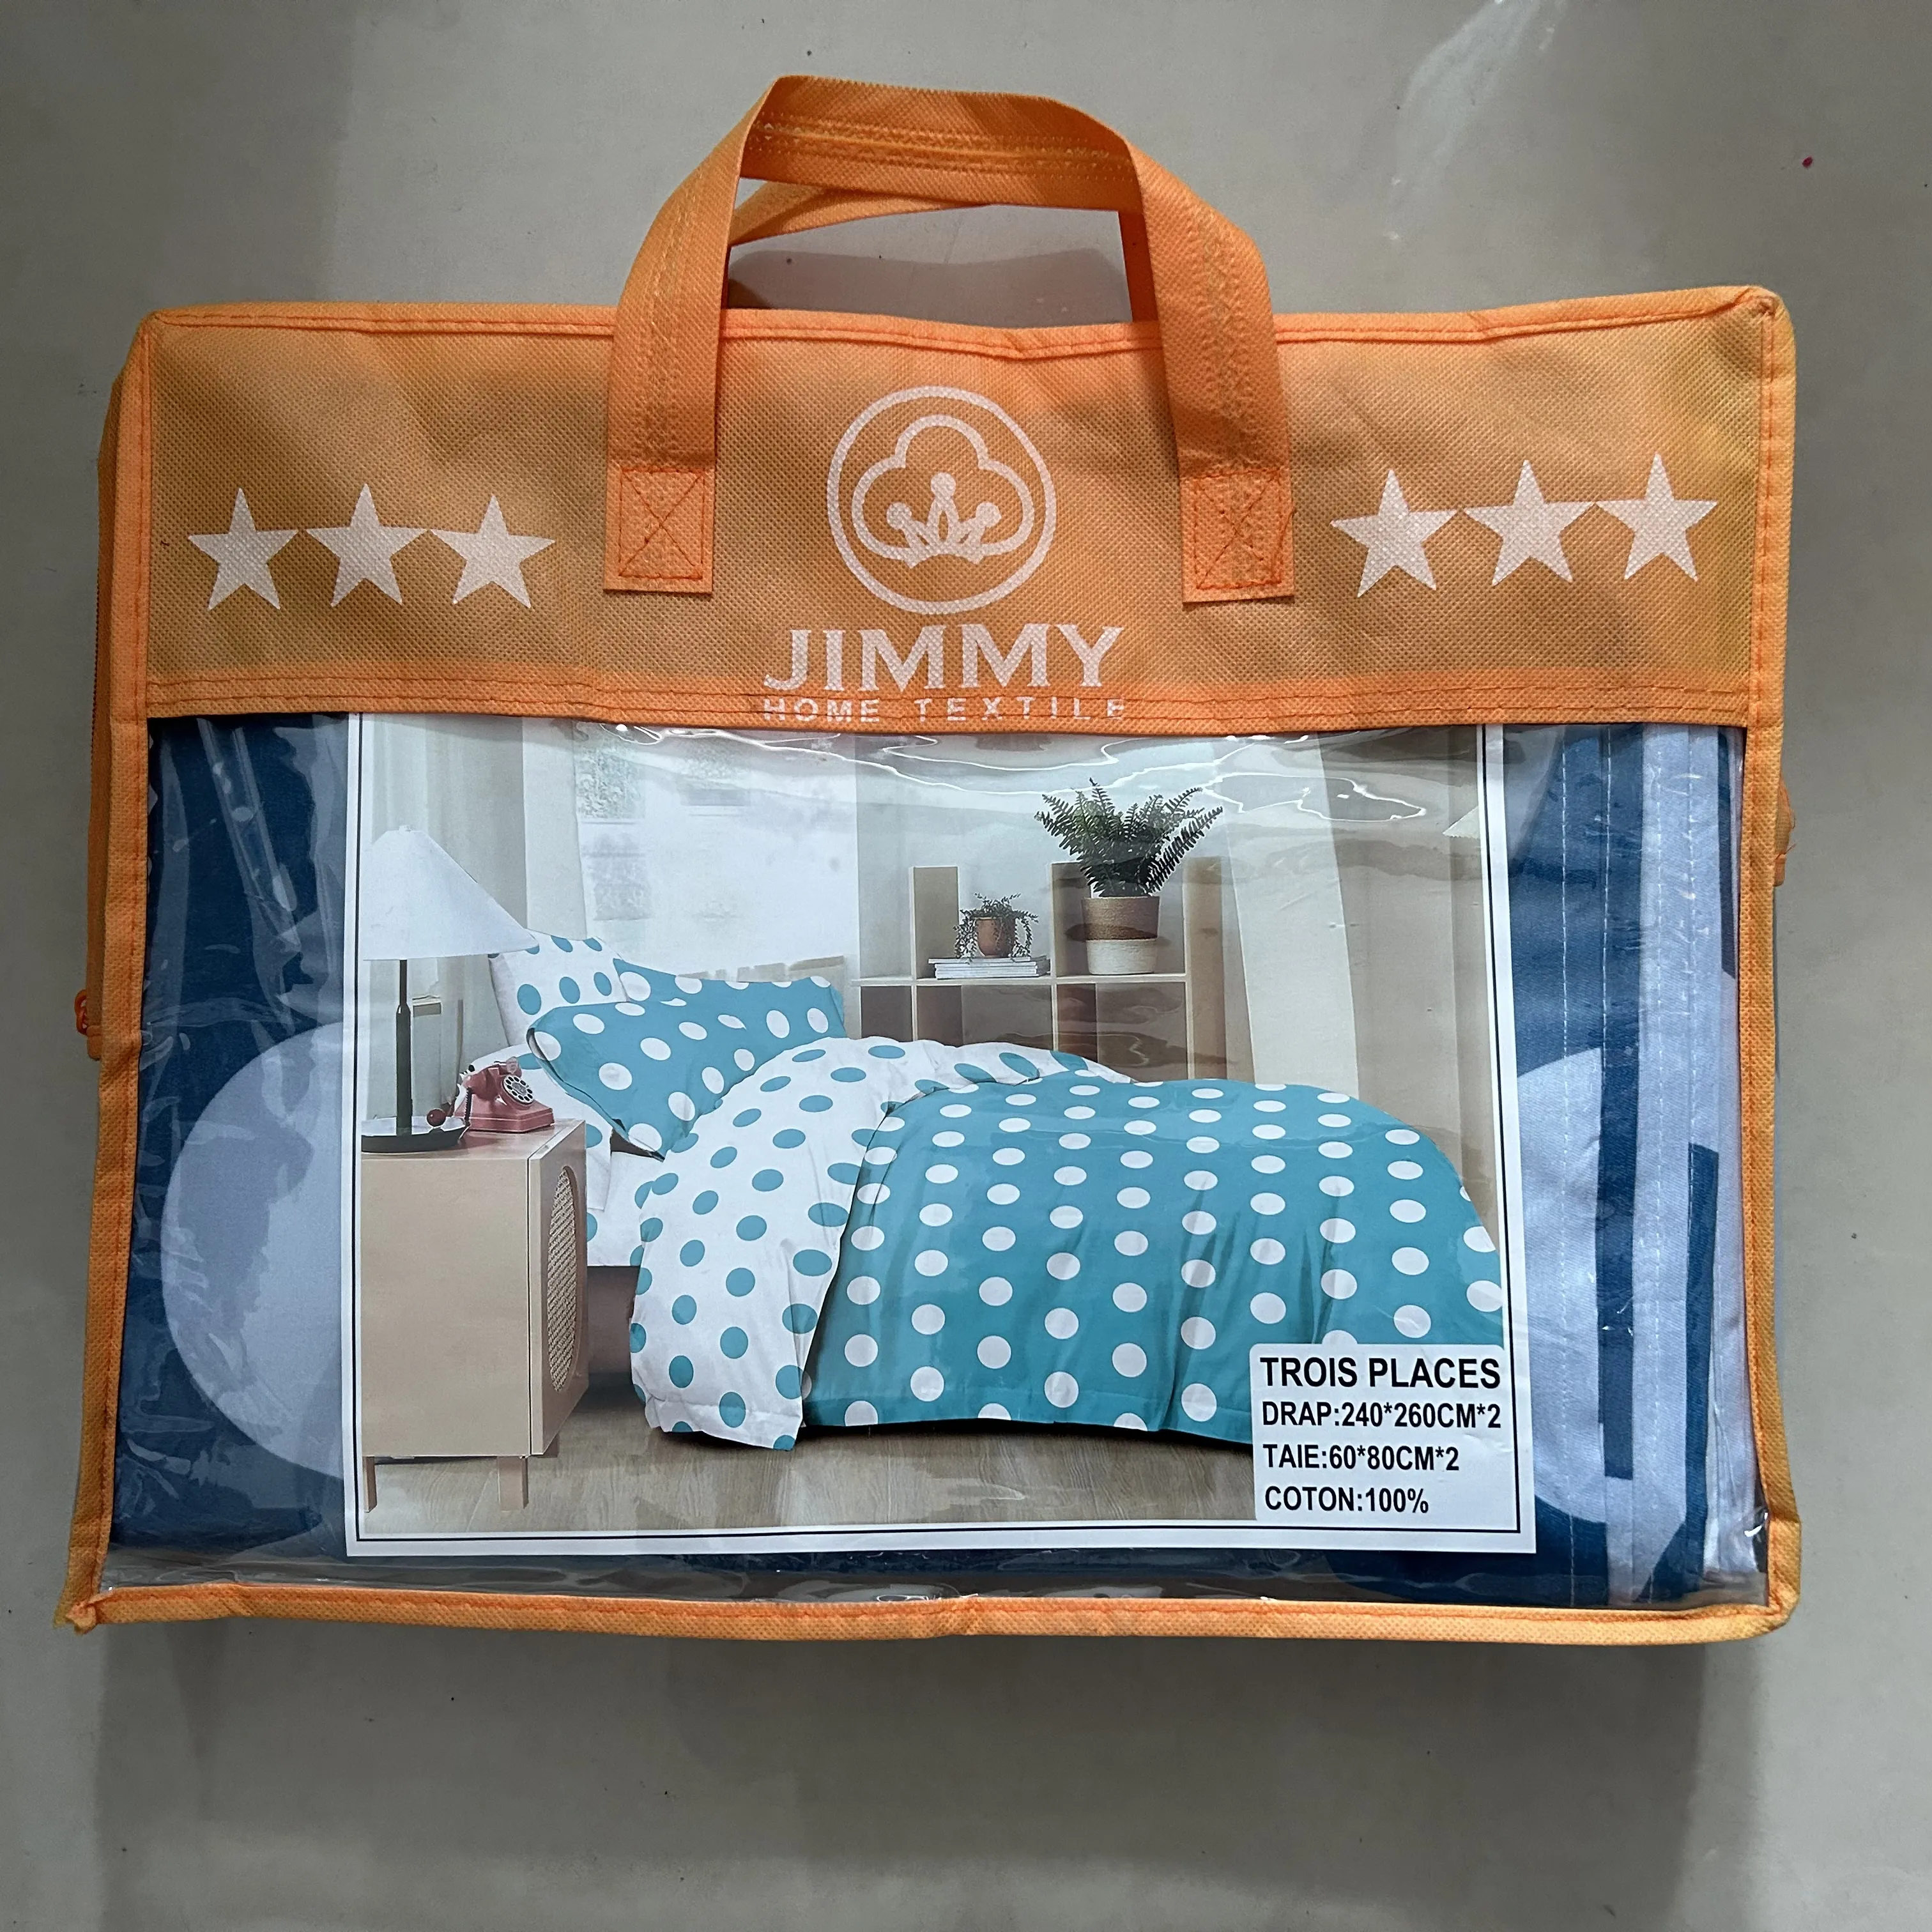 Jimmy Factory drap de lit 4 pièces 3 places drap plat de bonne qualité avec taies d'oreiller roi taille 100% coton ensemble de draps